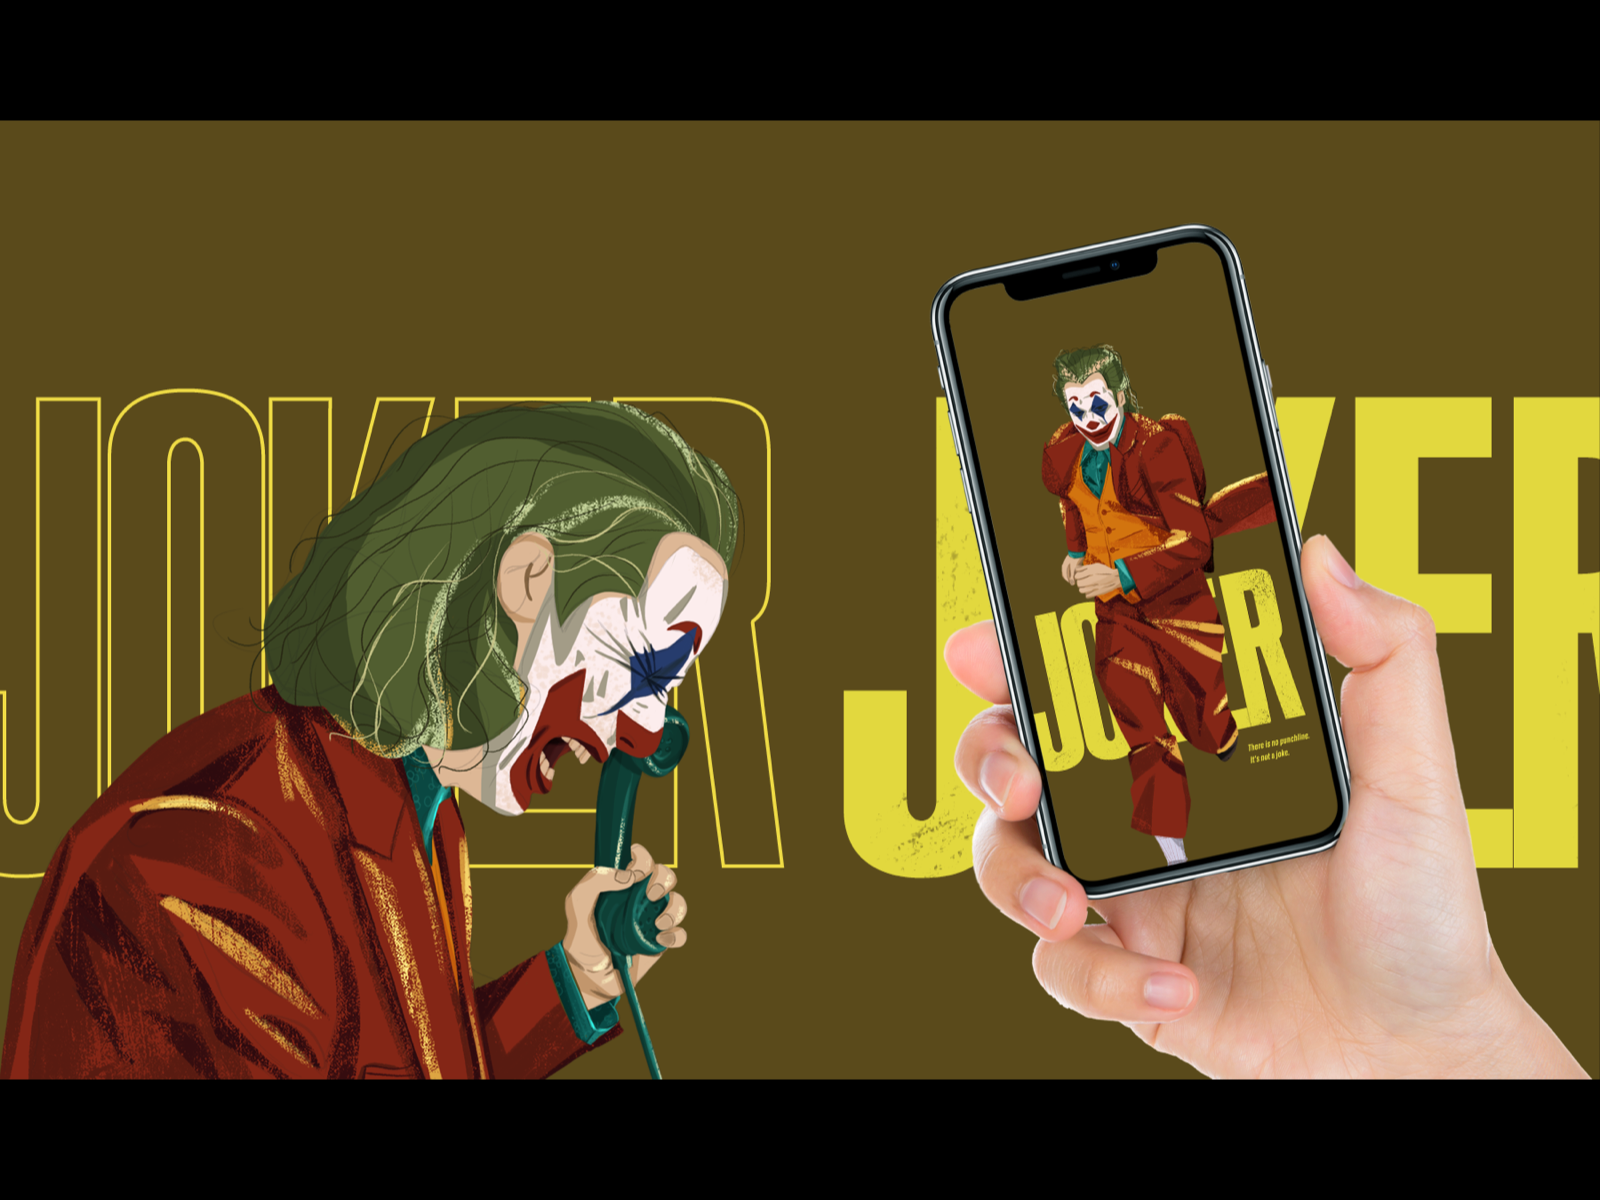 JOKER 人像 人物 小丑 手绘 插图 插画 文艺 电影 设计